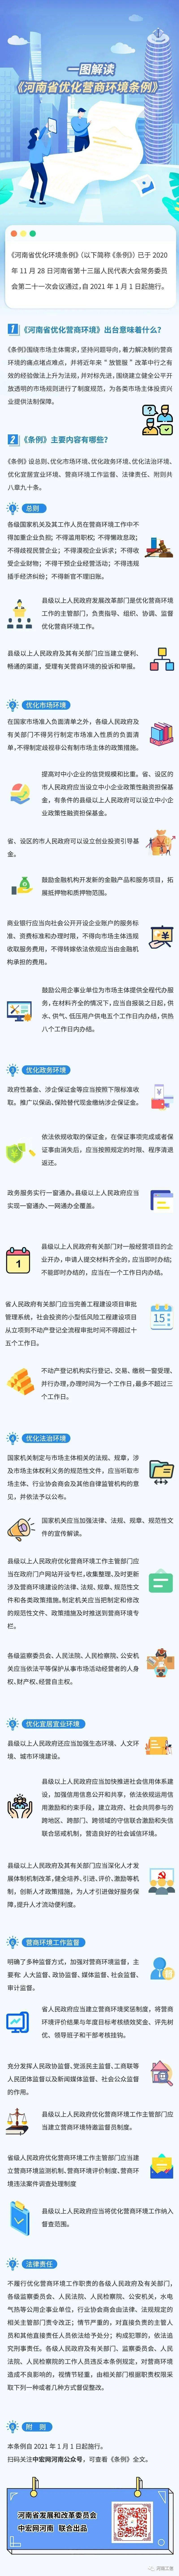 河南省优化营商环境条例以图解读.jpg